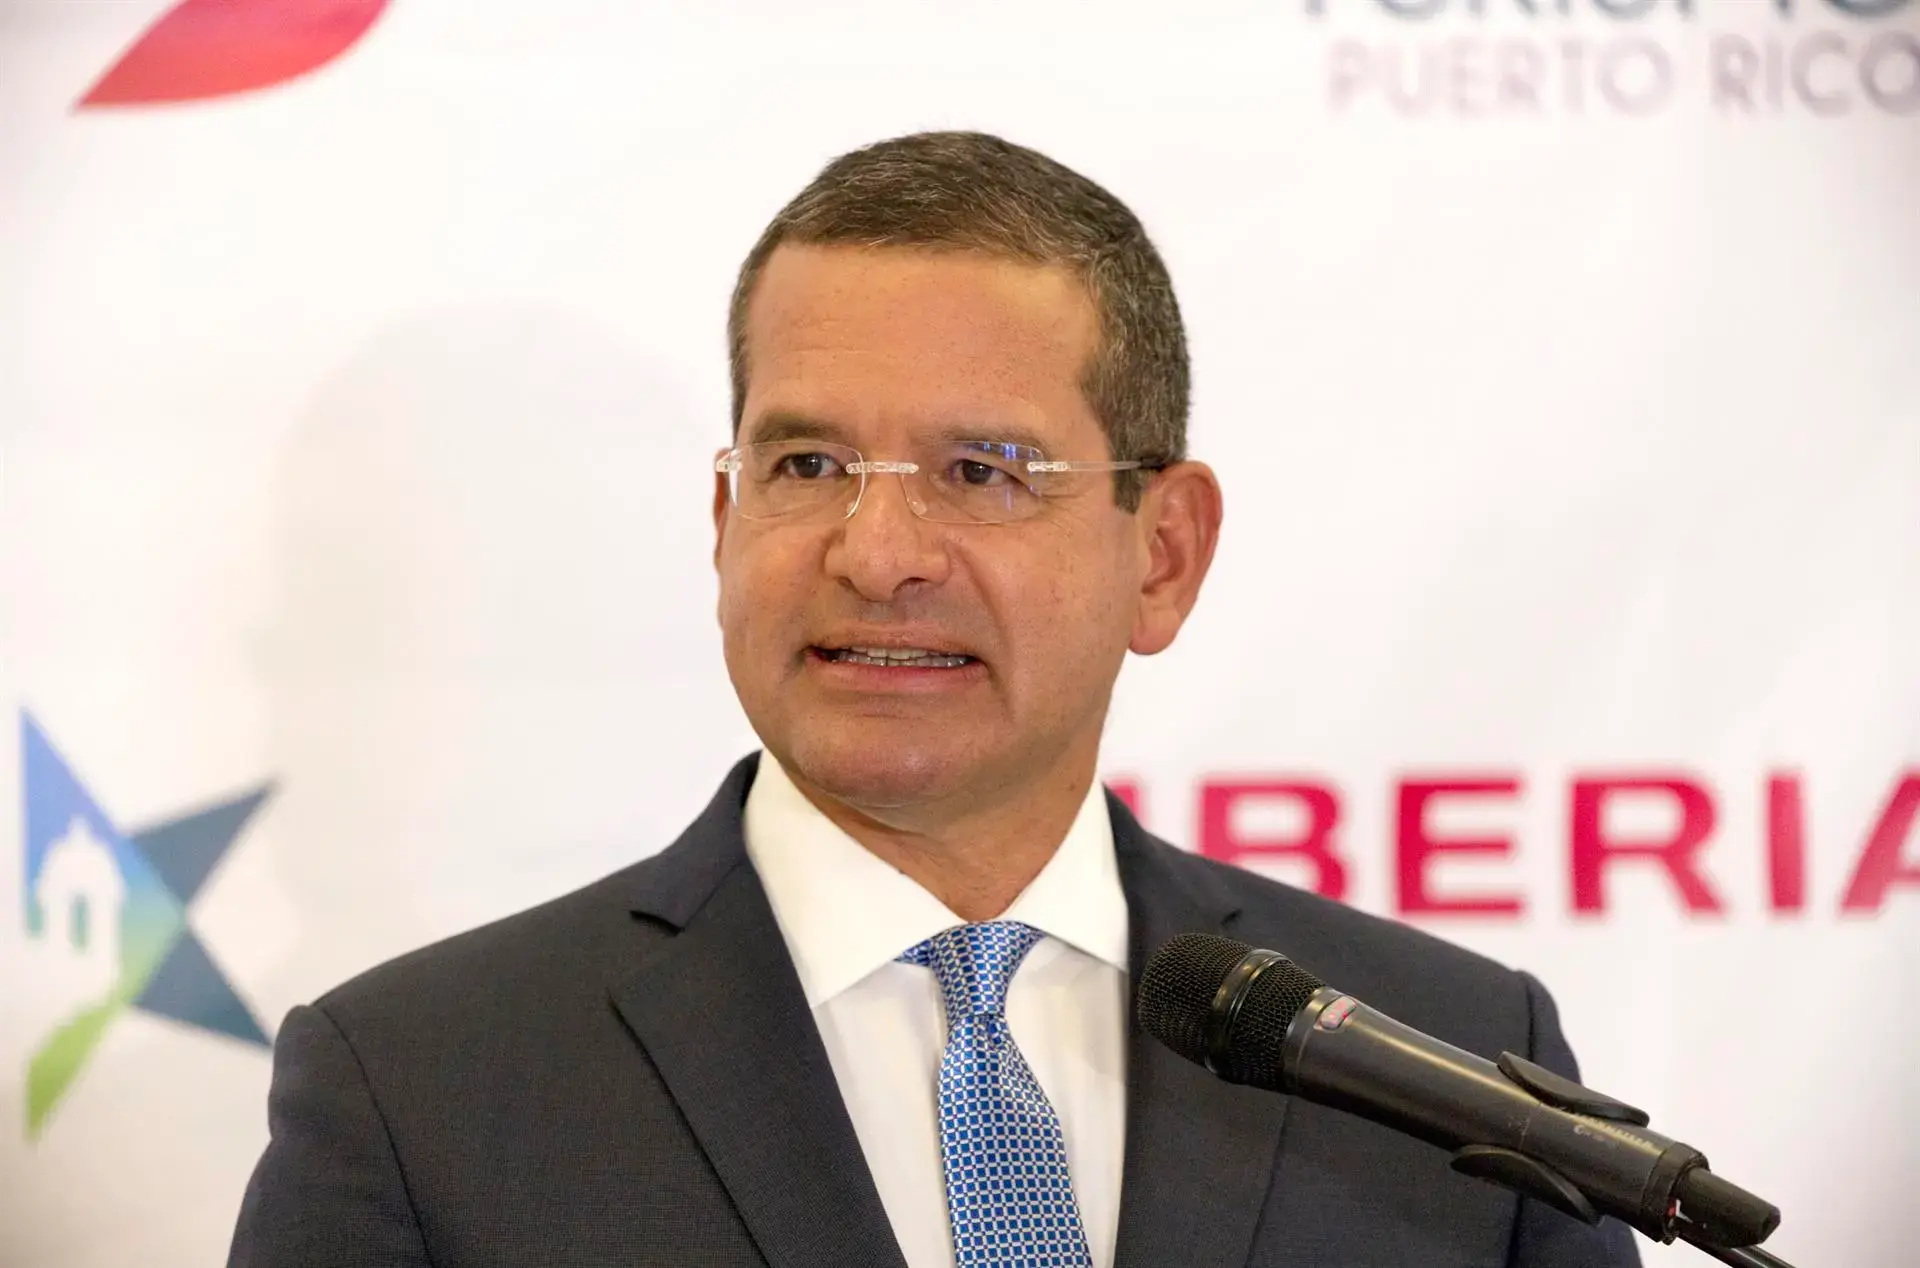 Pierluisi promete “cero tolerancia” contra la corrupción en Puerto Rico